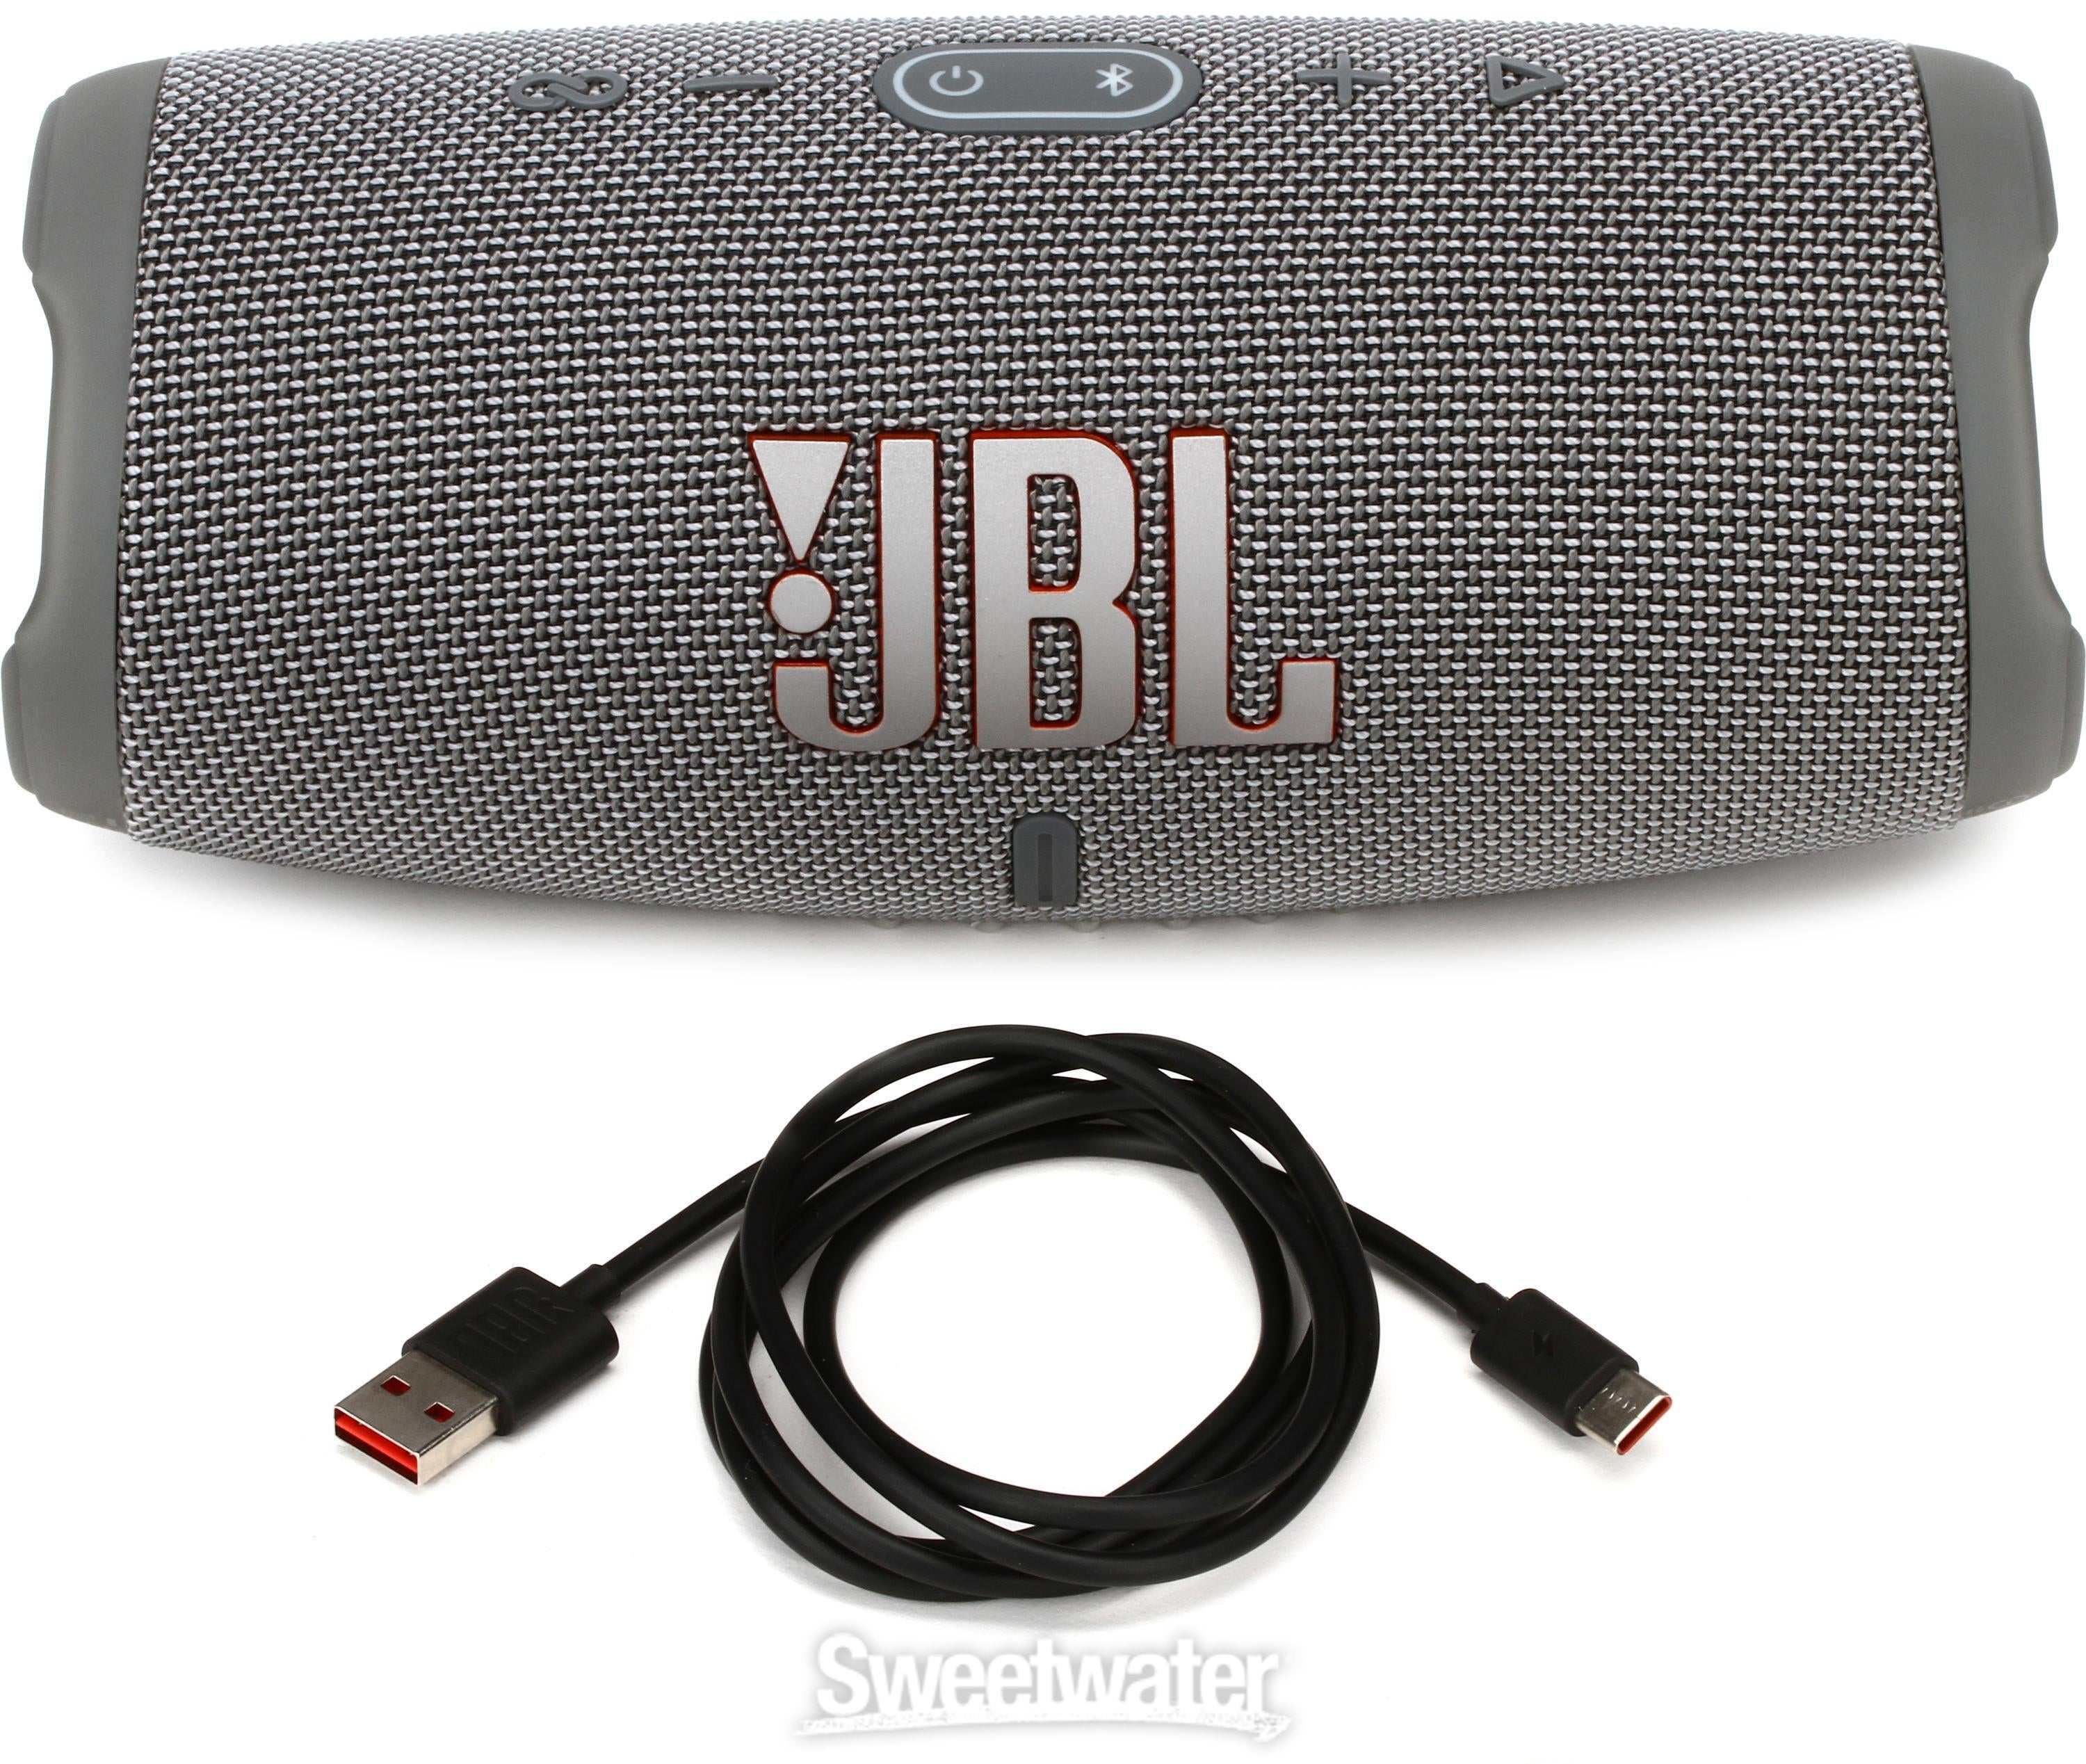 JBL Lifestyle Charge 5 Portable Waterproof Bluetooth Speaker